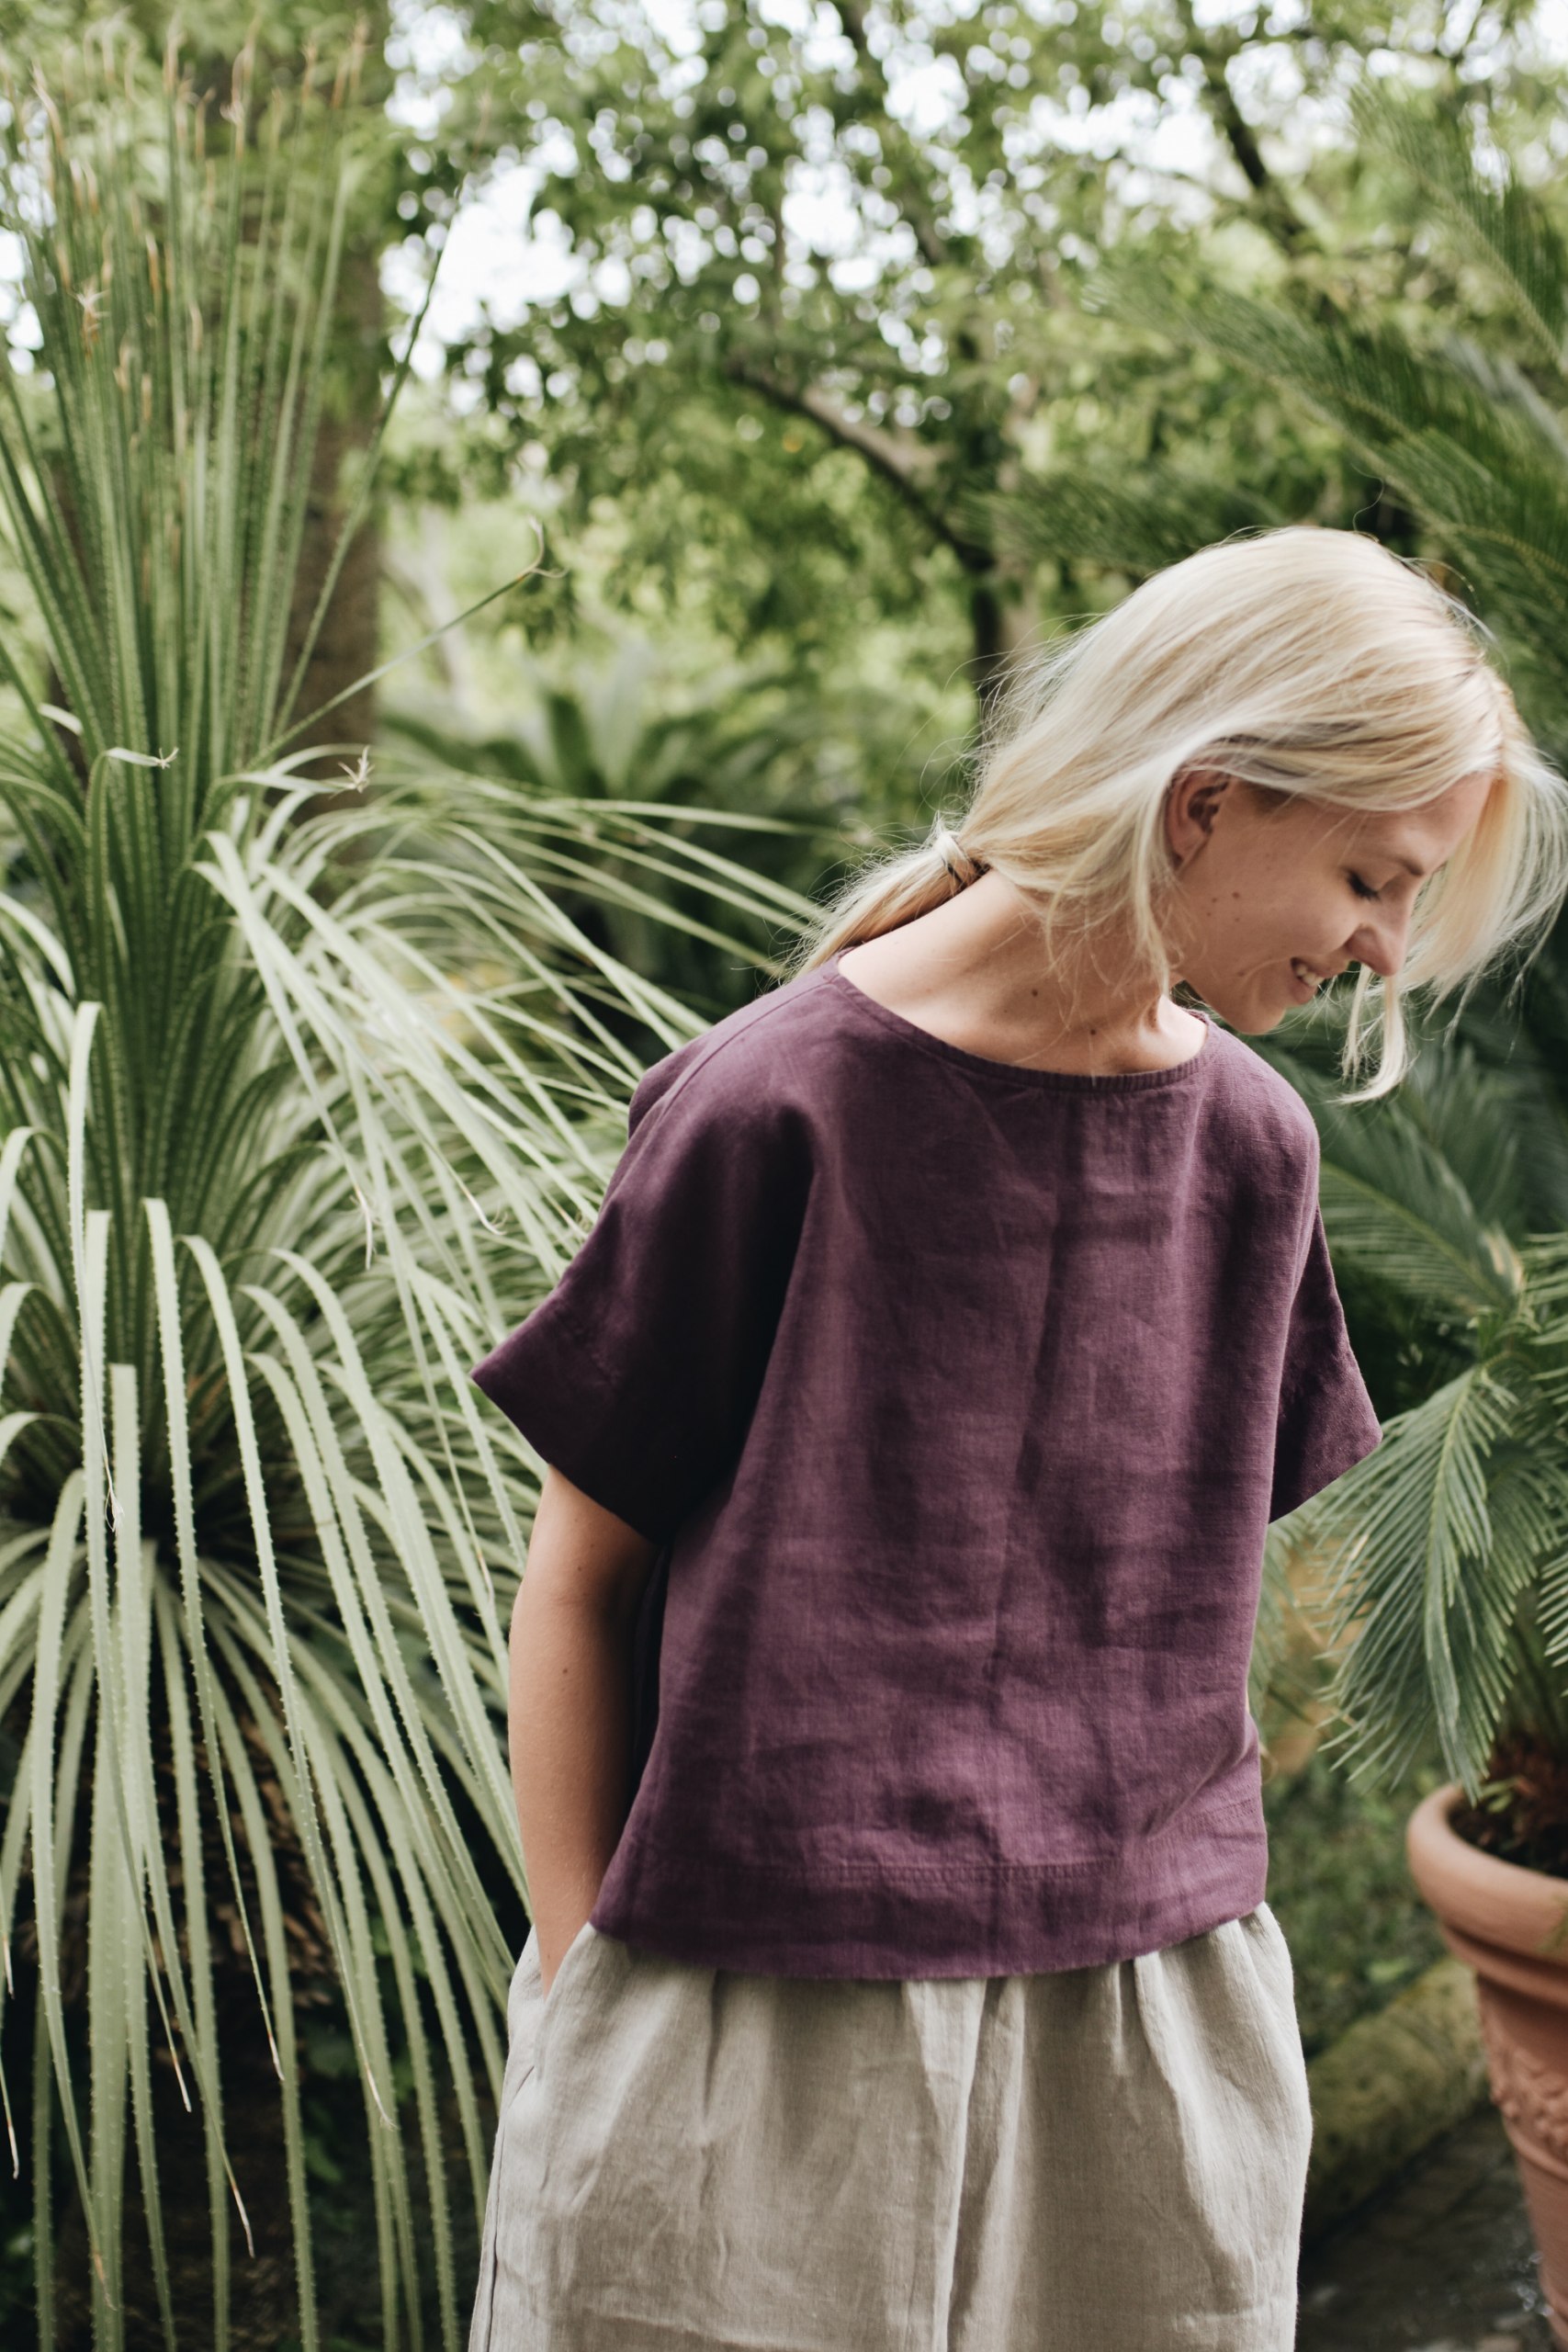 Linenfox model wearing short sleeve summer linen top in dark purple